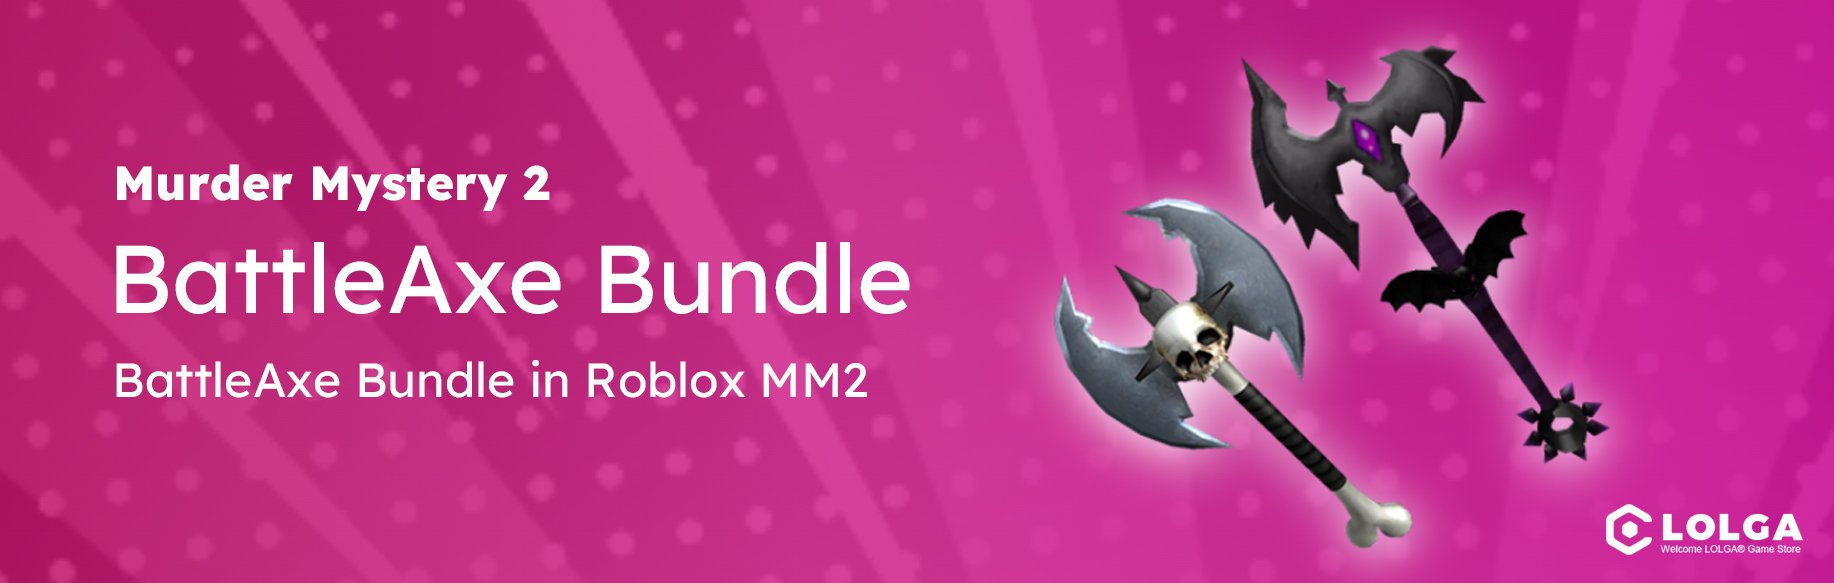 BattleAxe Bundle in Roblox MM2